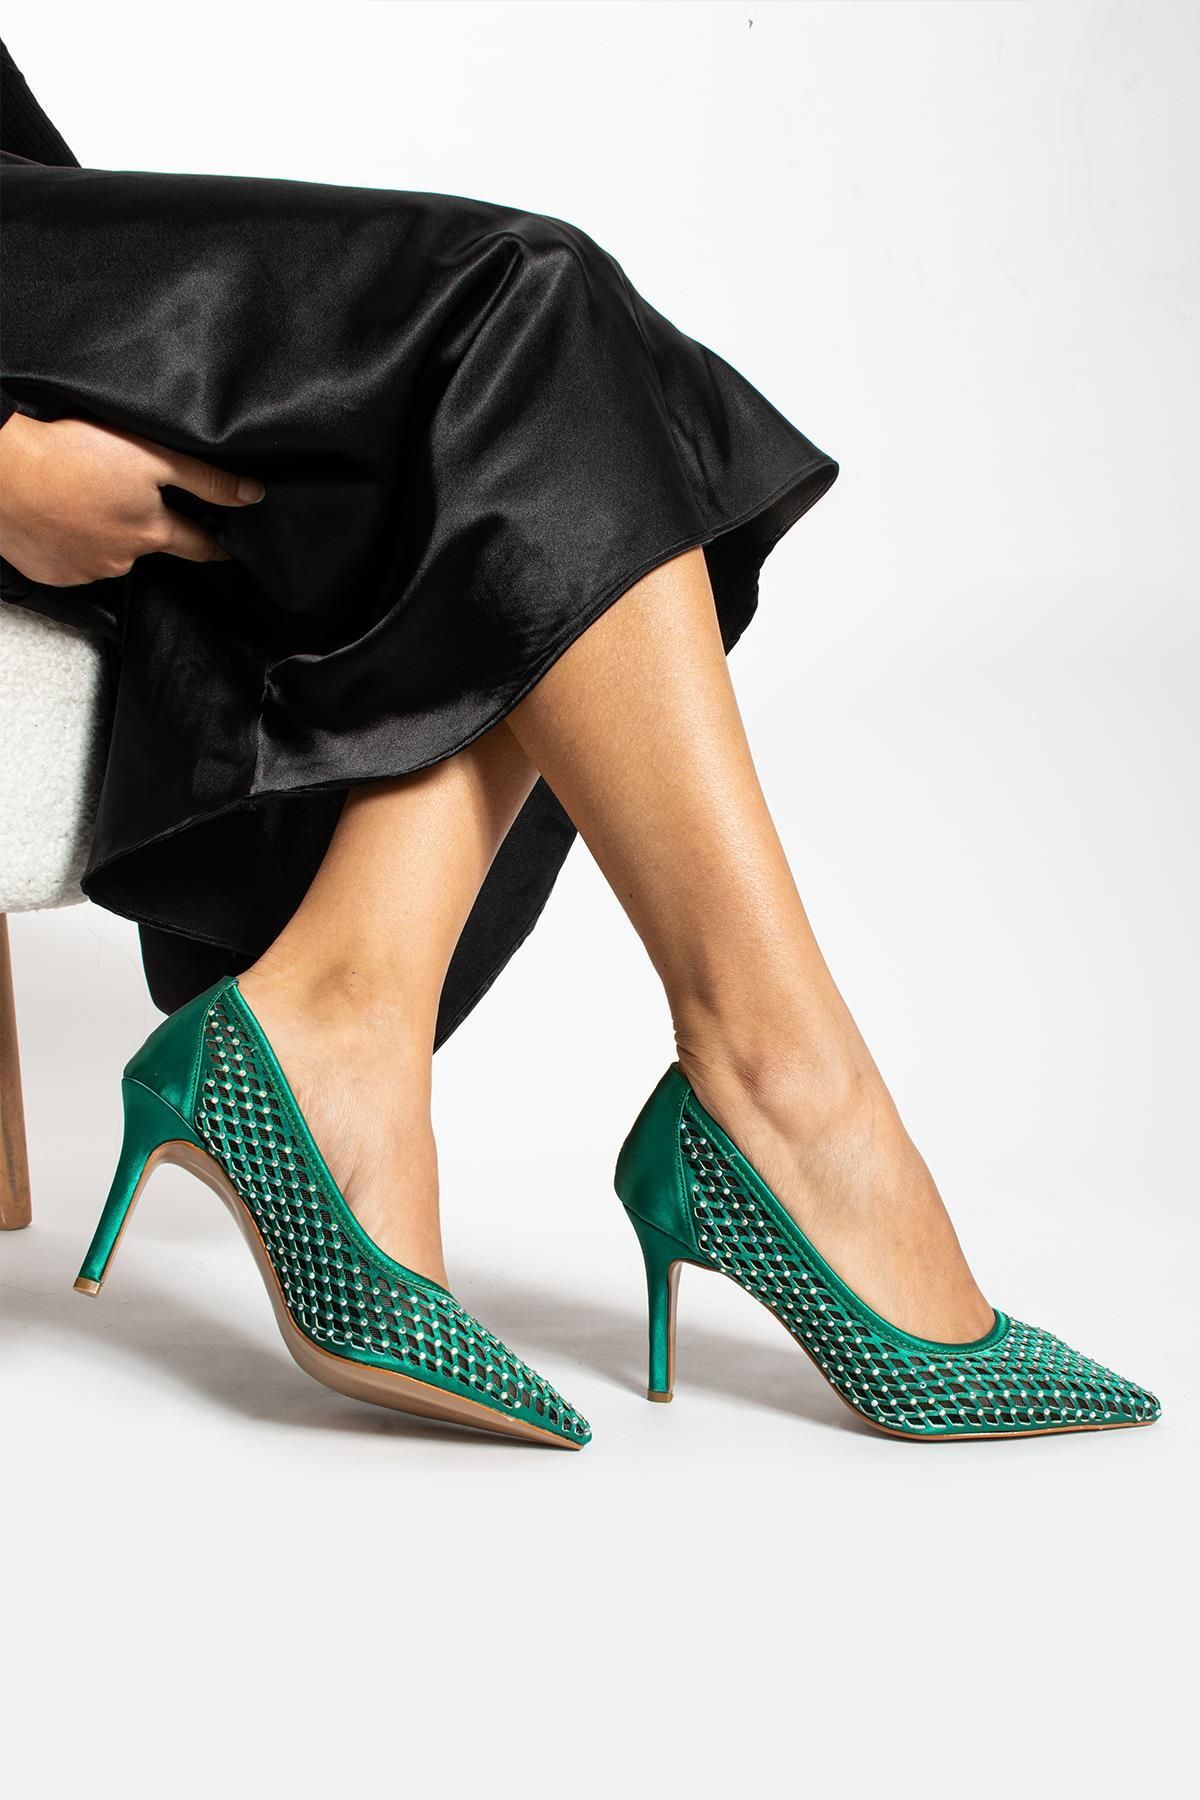 Gökçe Shoes Sidney Yeşil Taşli Gerçek Deri Kadin Topuklu Ayakkabı